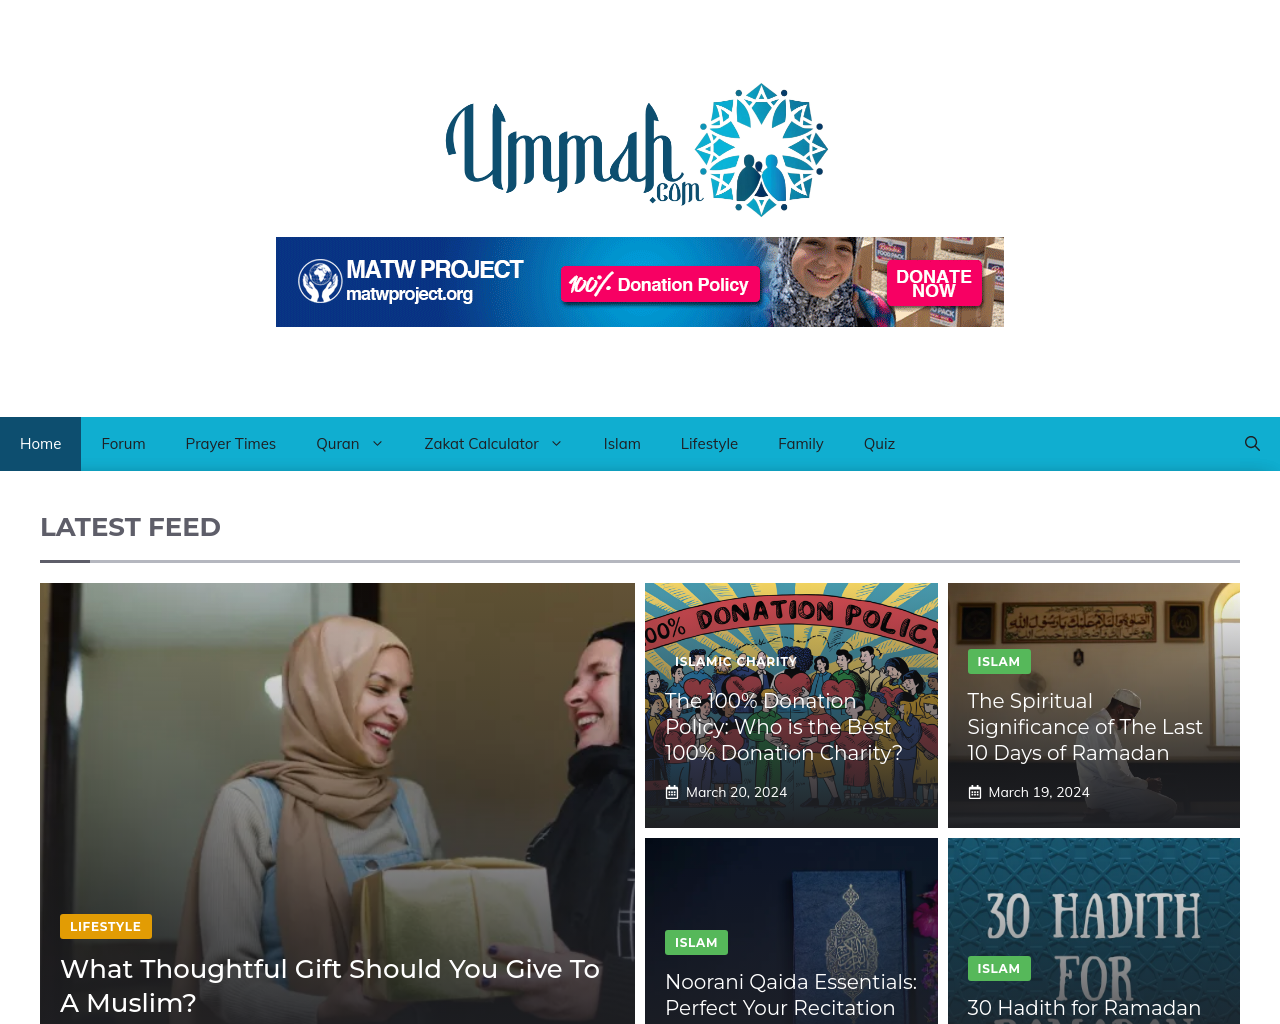 ummah.com